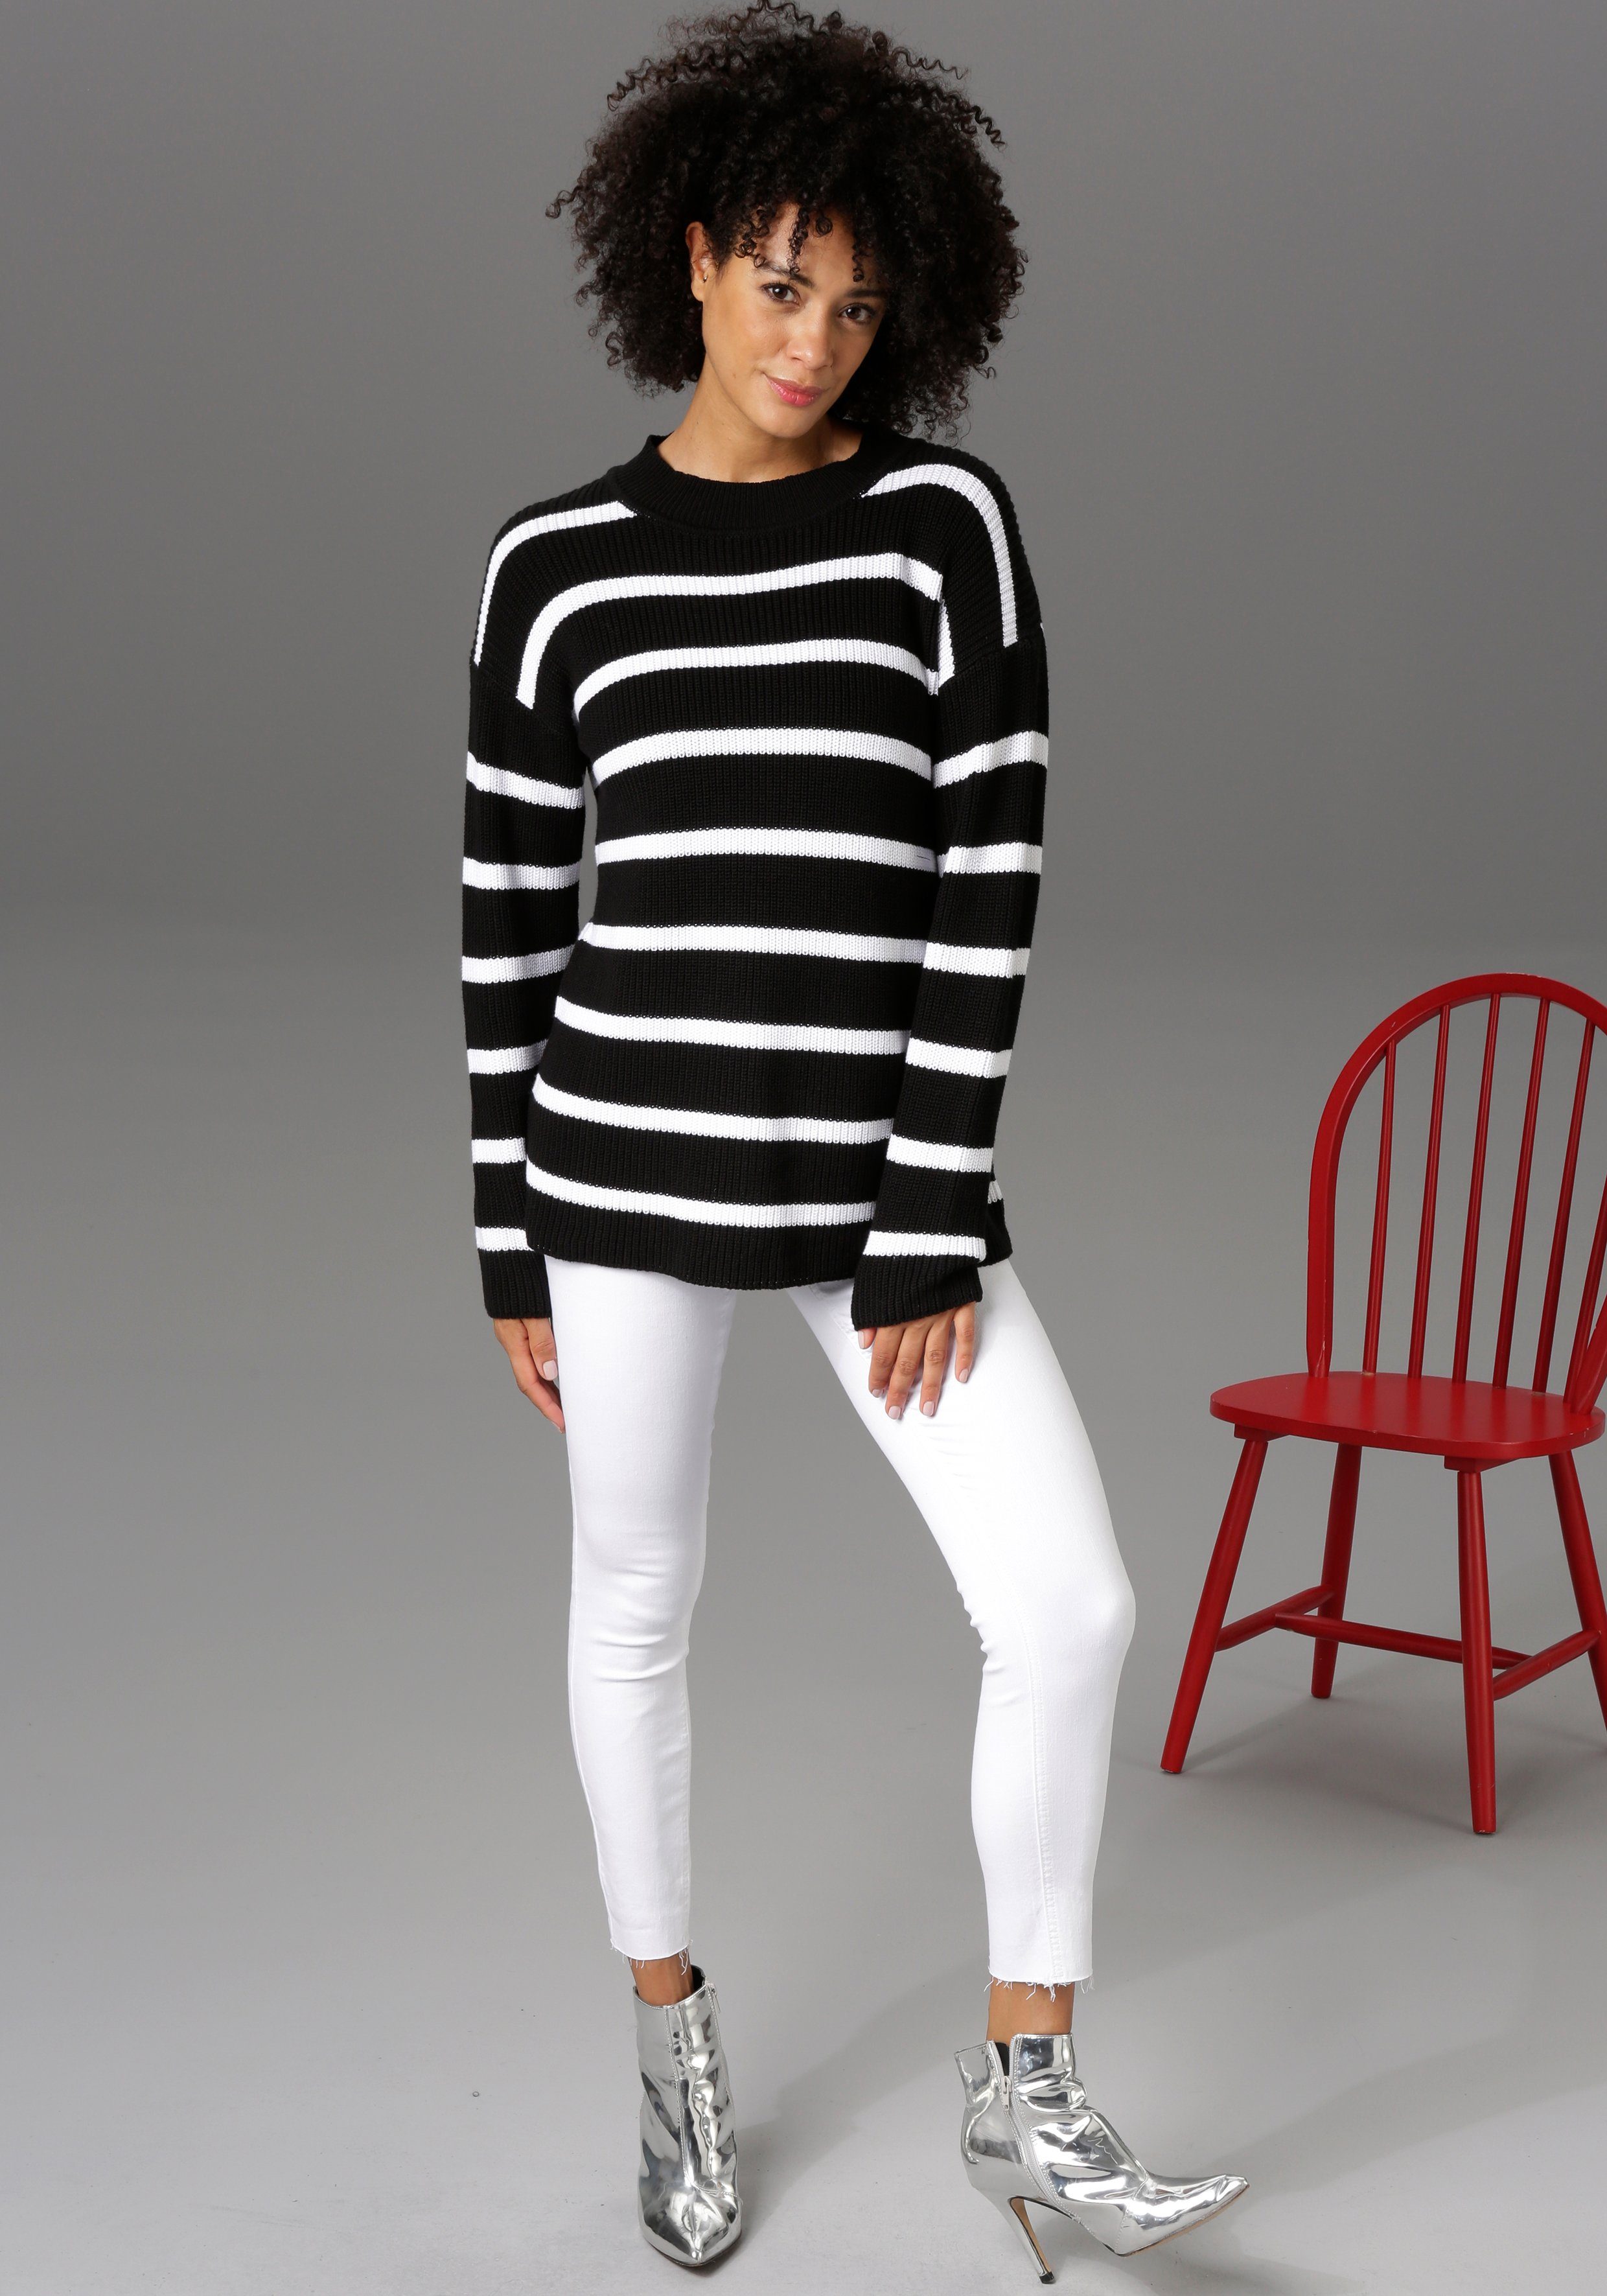 Aniston CASUAL Beinabschluss Skinny-fit-Jeans ausgefransten - regular mit waist white